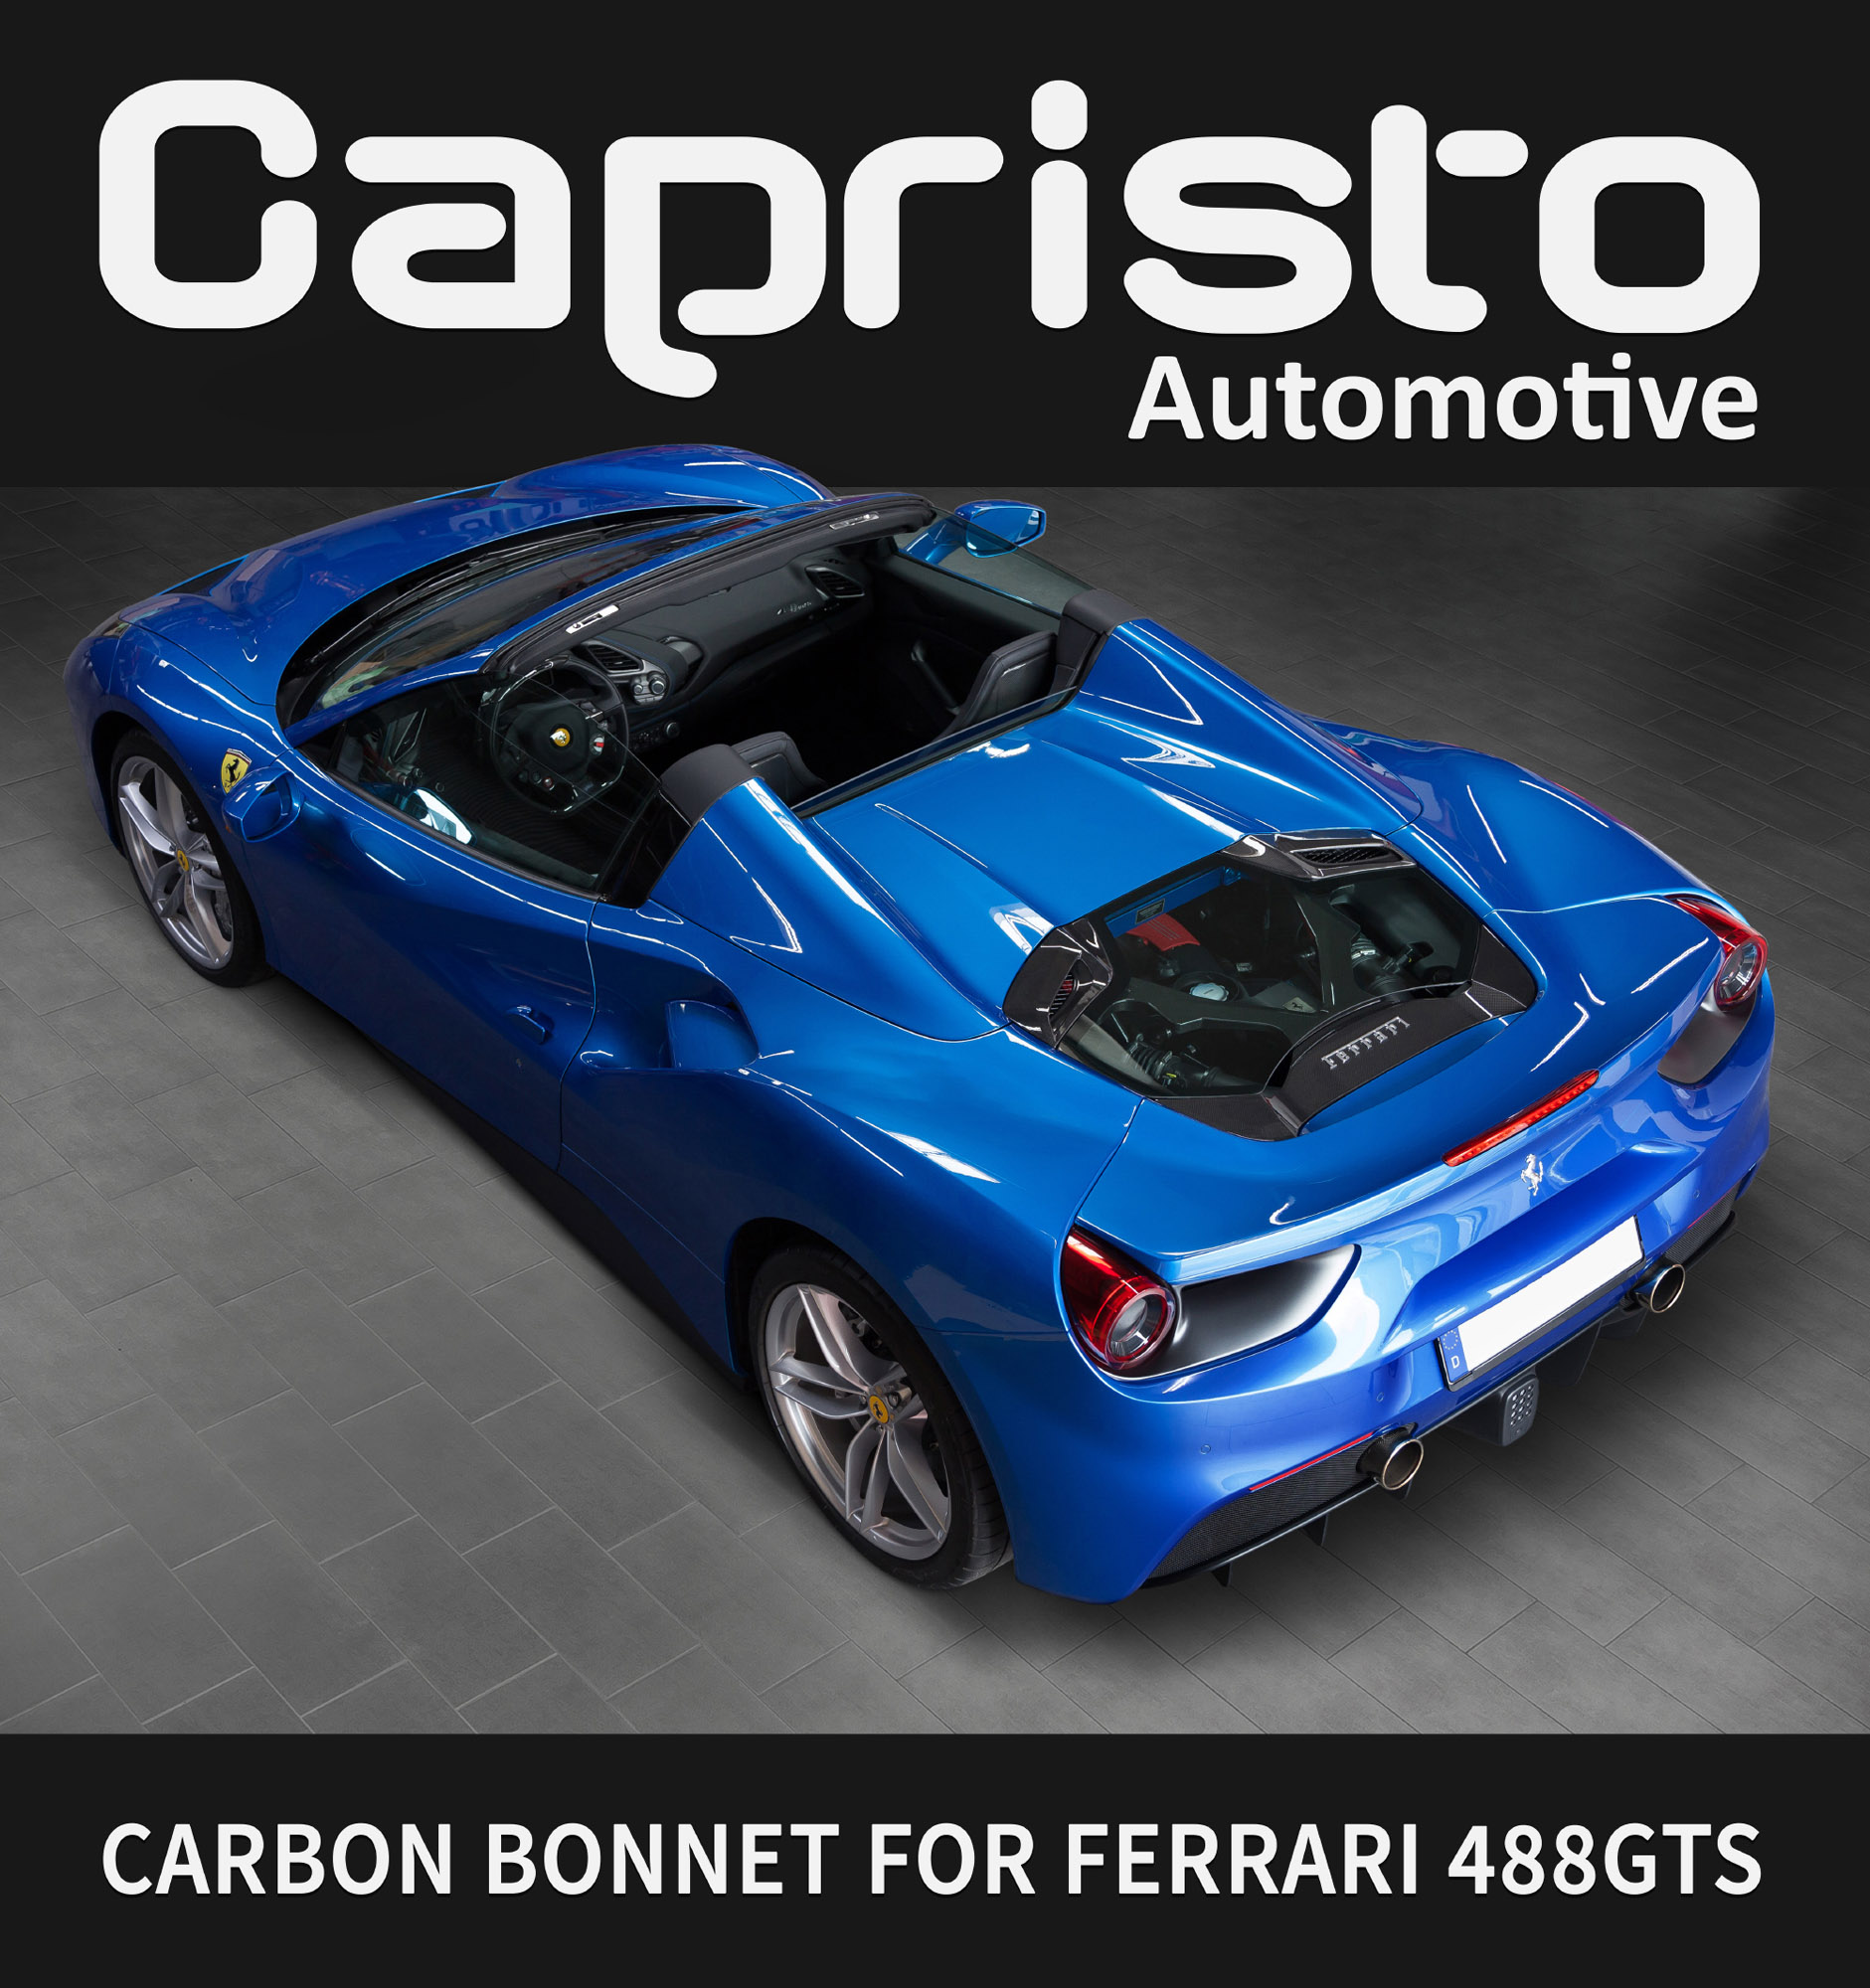 Capristo Automotive Ferrari 488 GTS